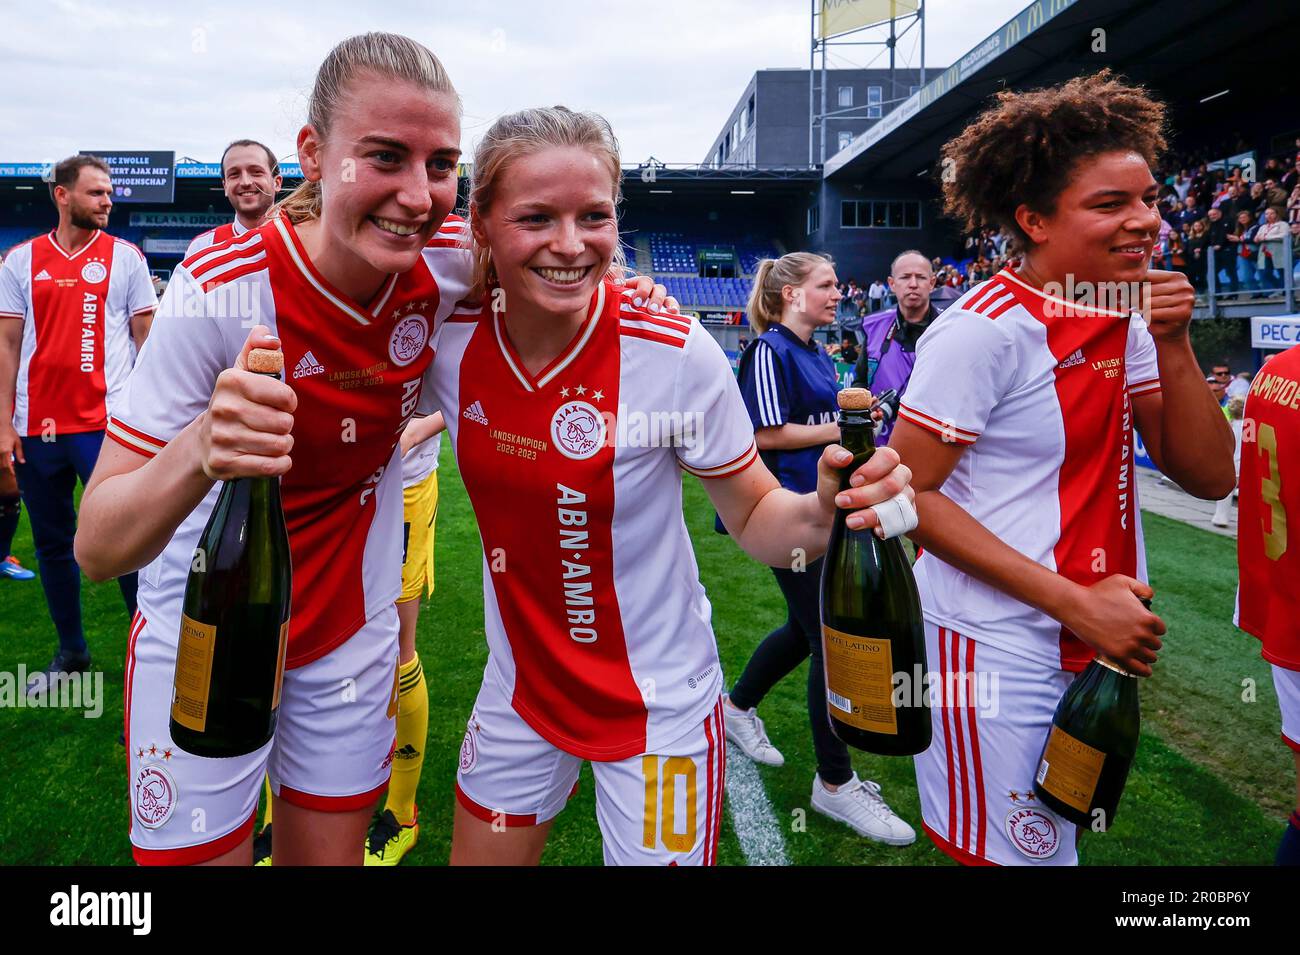 07-05-2023: Sport: PEC contre Ajax (femmes) ZWOLLE, PAYS-BAS - MAI 7: Lisa Doorn (AFC Ajax) et Nadine Noordam (AFC Ajax) pendant le match Néerlandais Azerio Banque D'Images